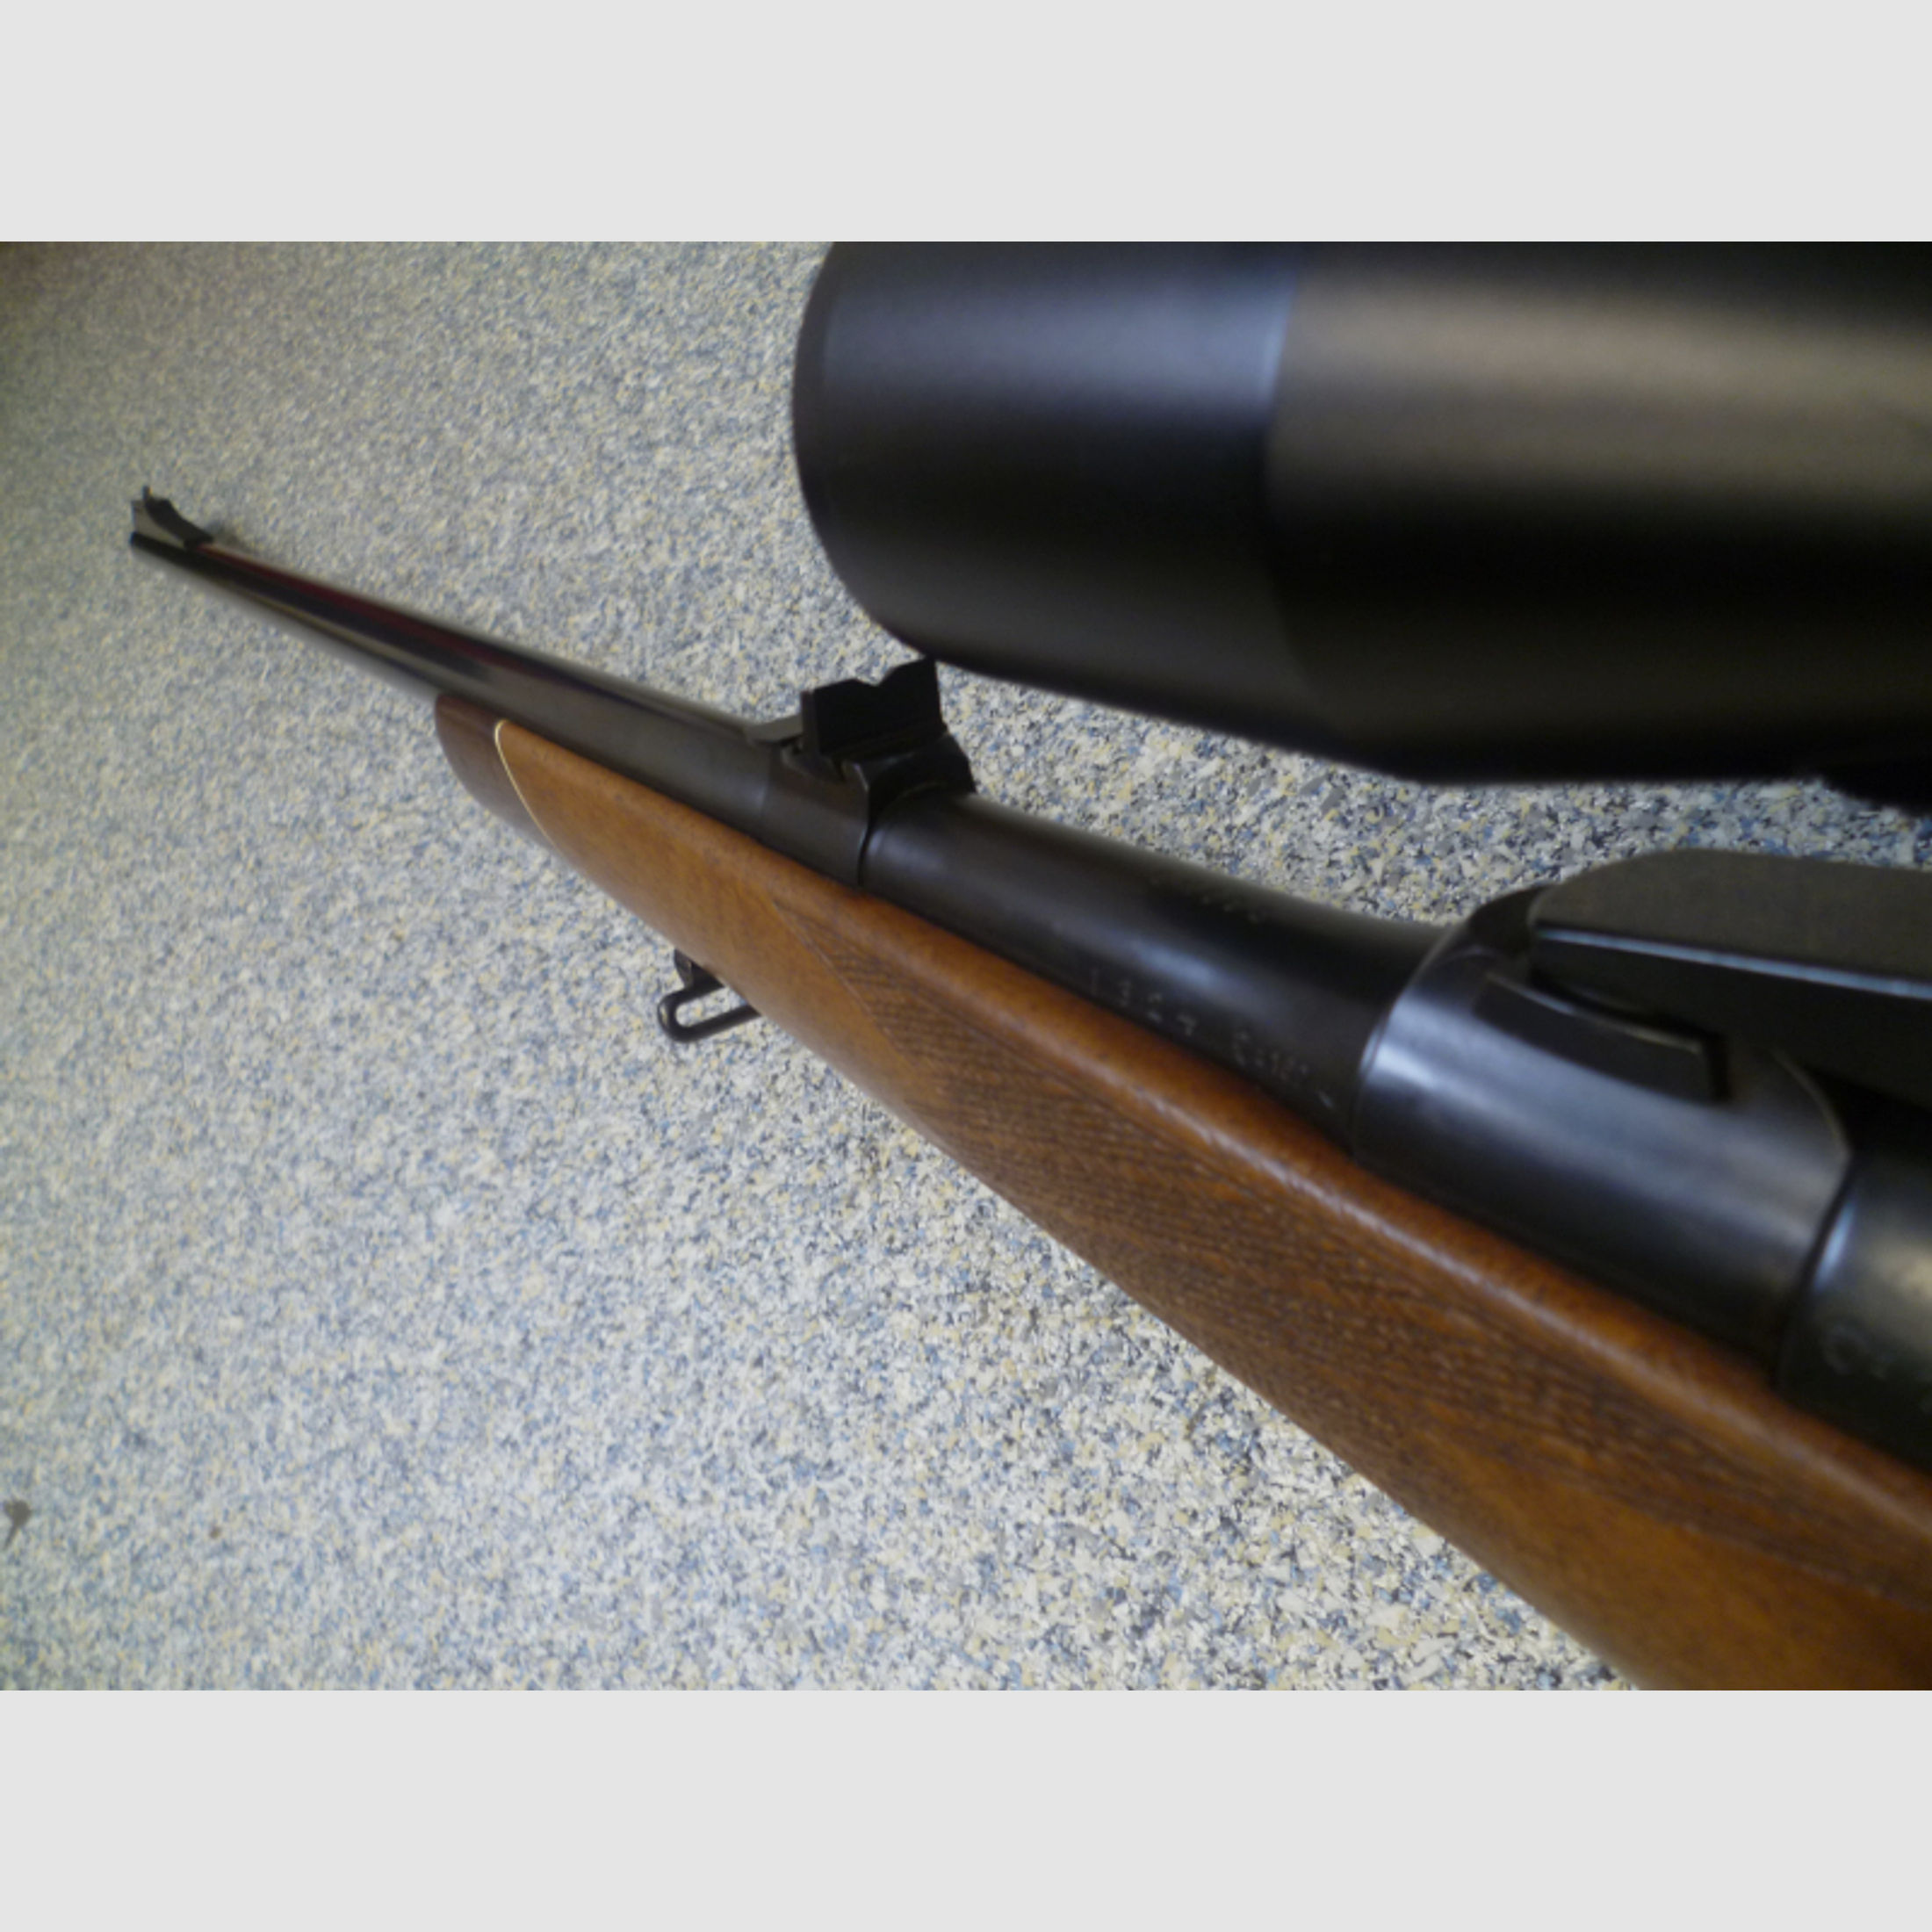 Repetierbüchse Mauser 98 8x68S Zeiss